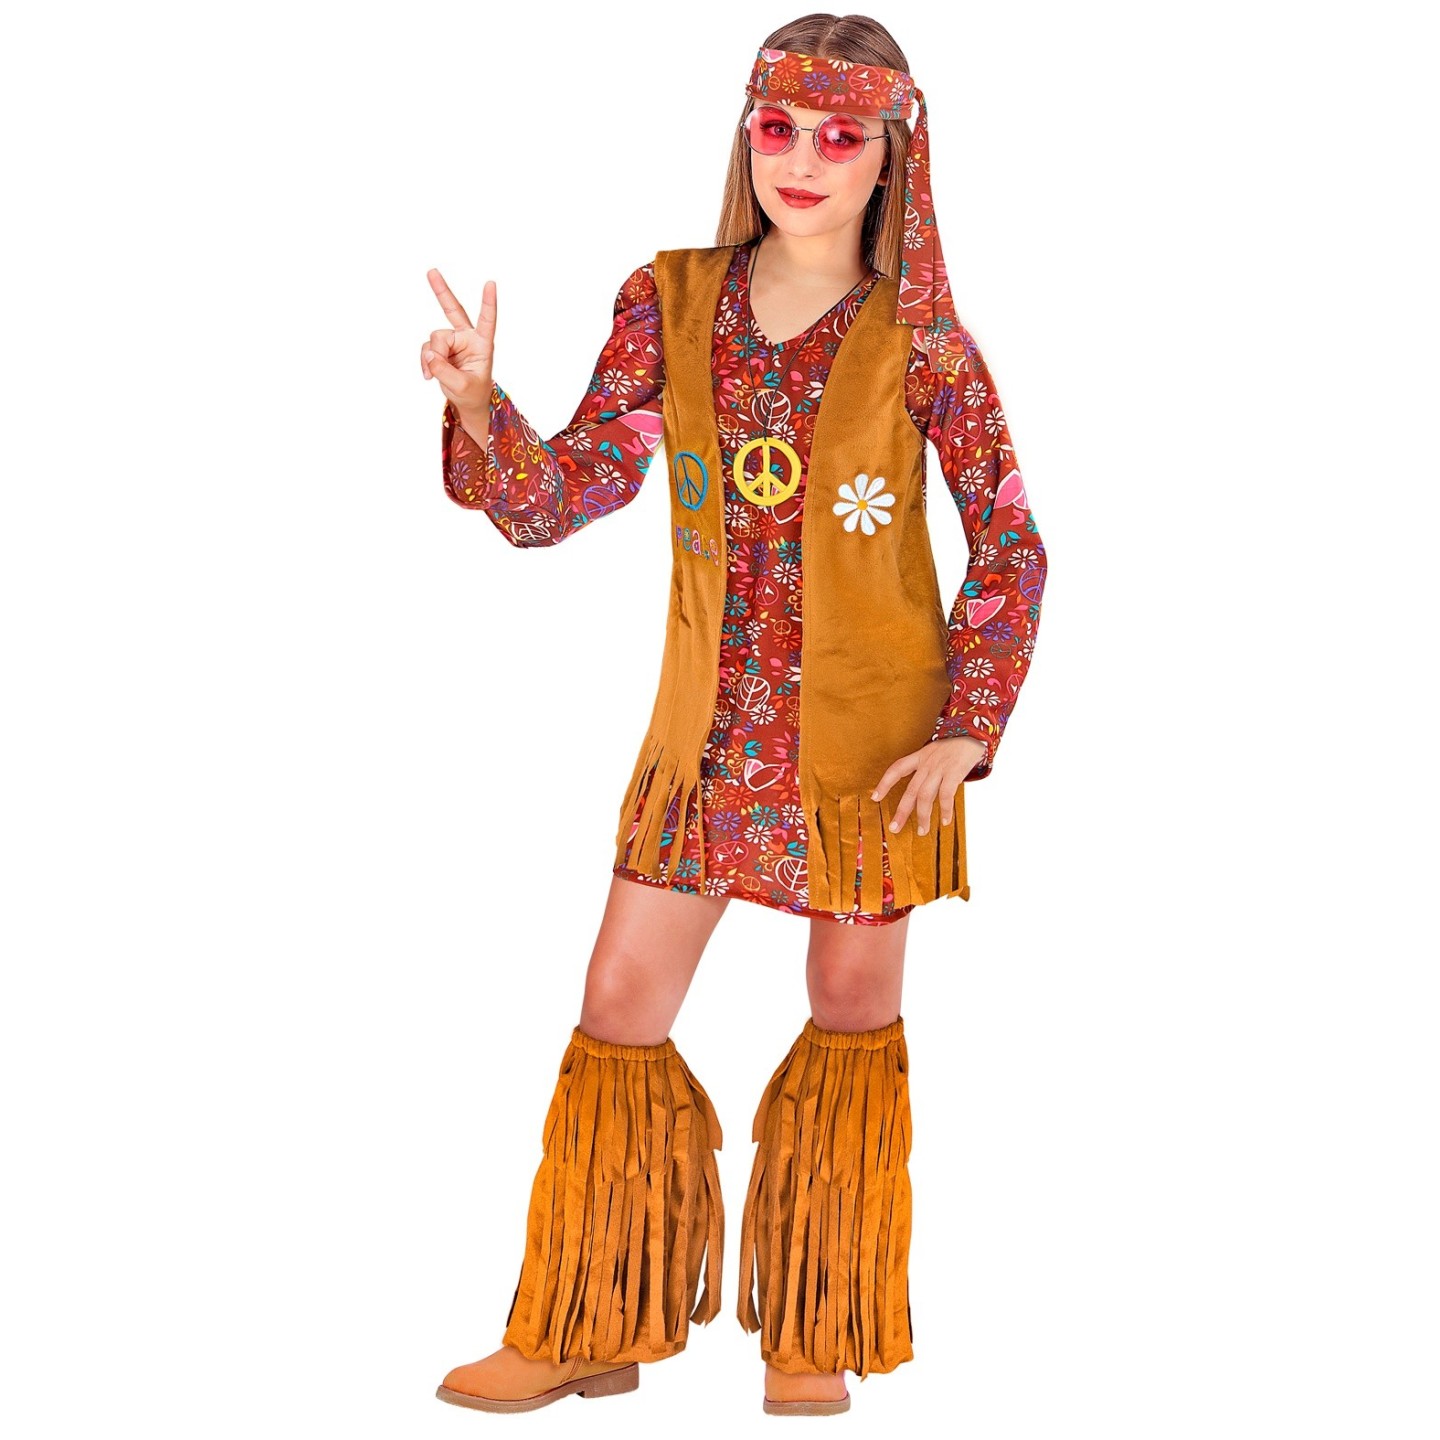 Lach Expliciet mogelijkheid Hippie kostuum kind bruin| Jokershop.be - Jaren 60 kleding